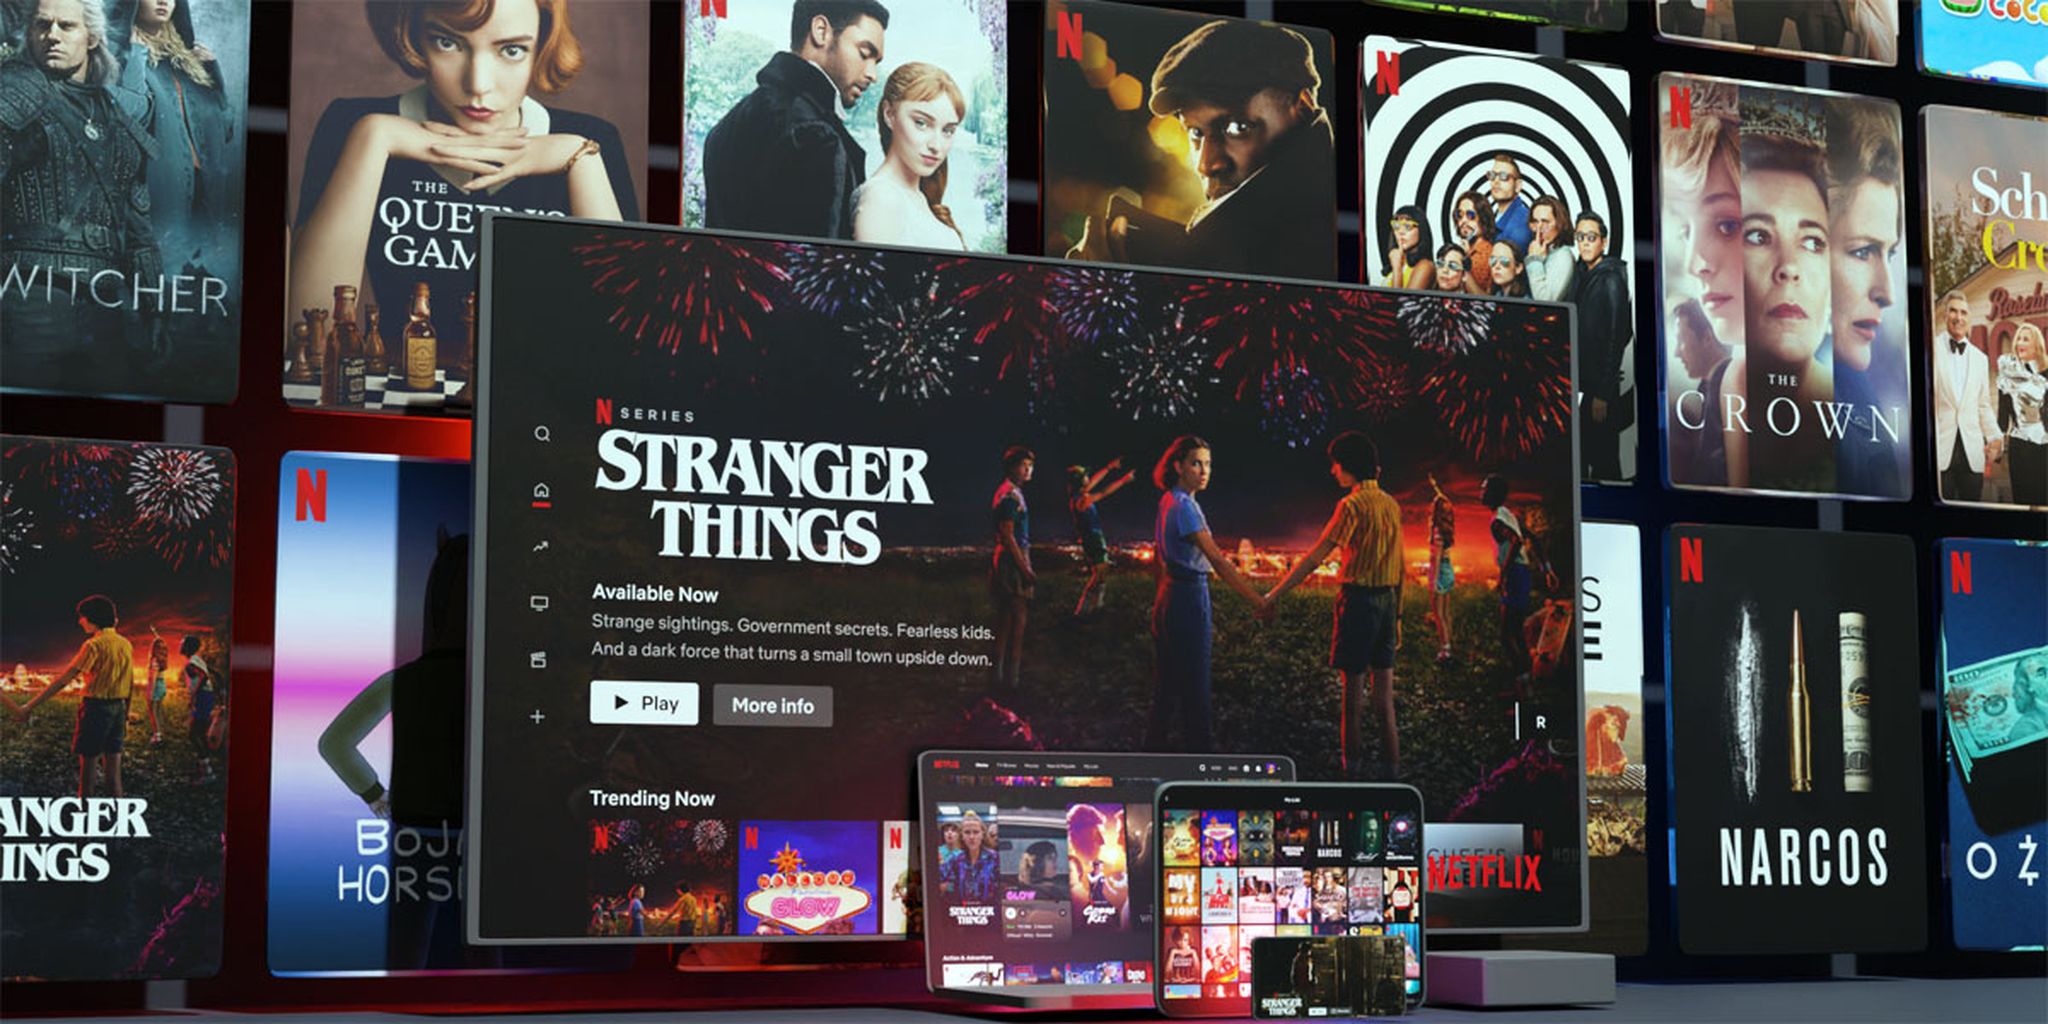 Hoge groei omzet en aantal abonnees Netflix, outlook valt iets tegen 